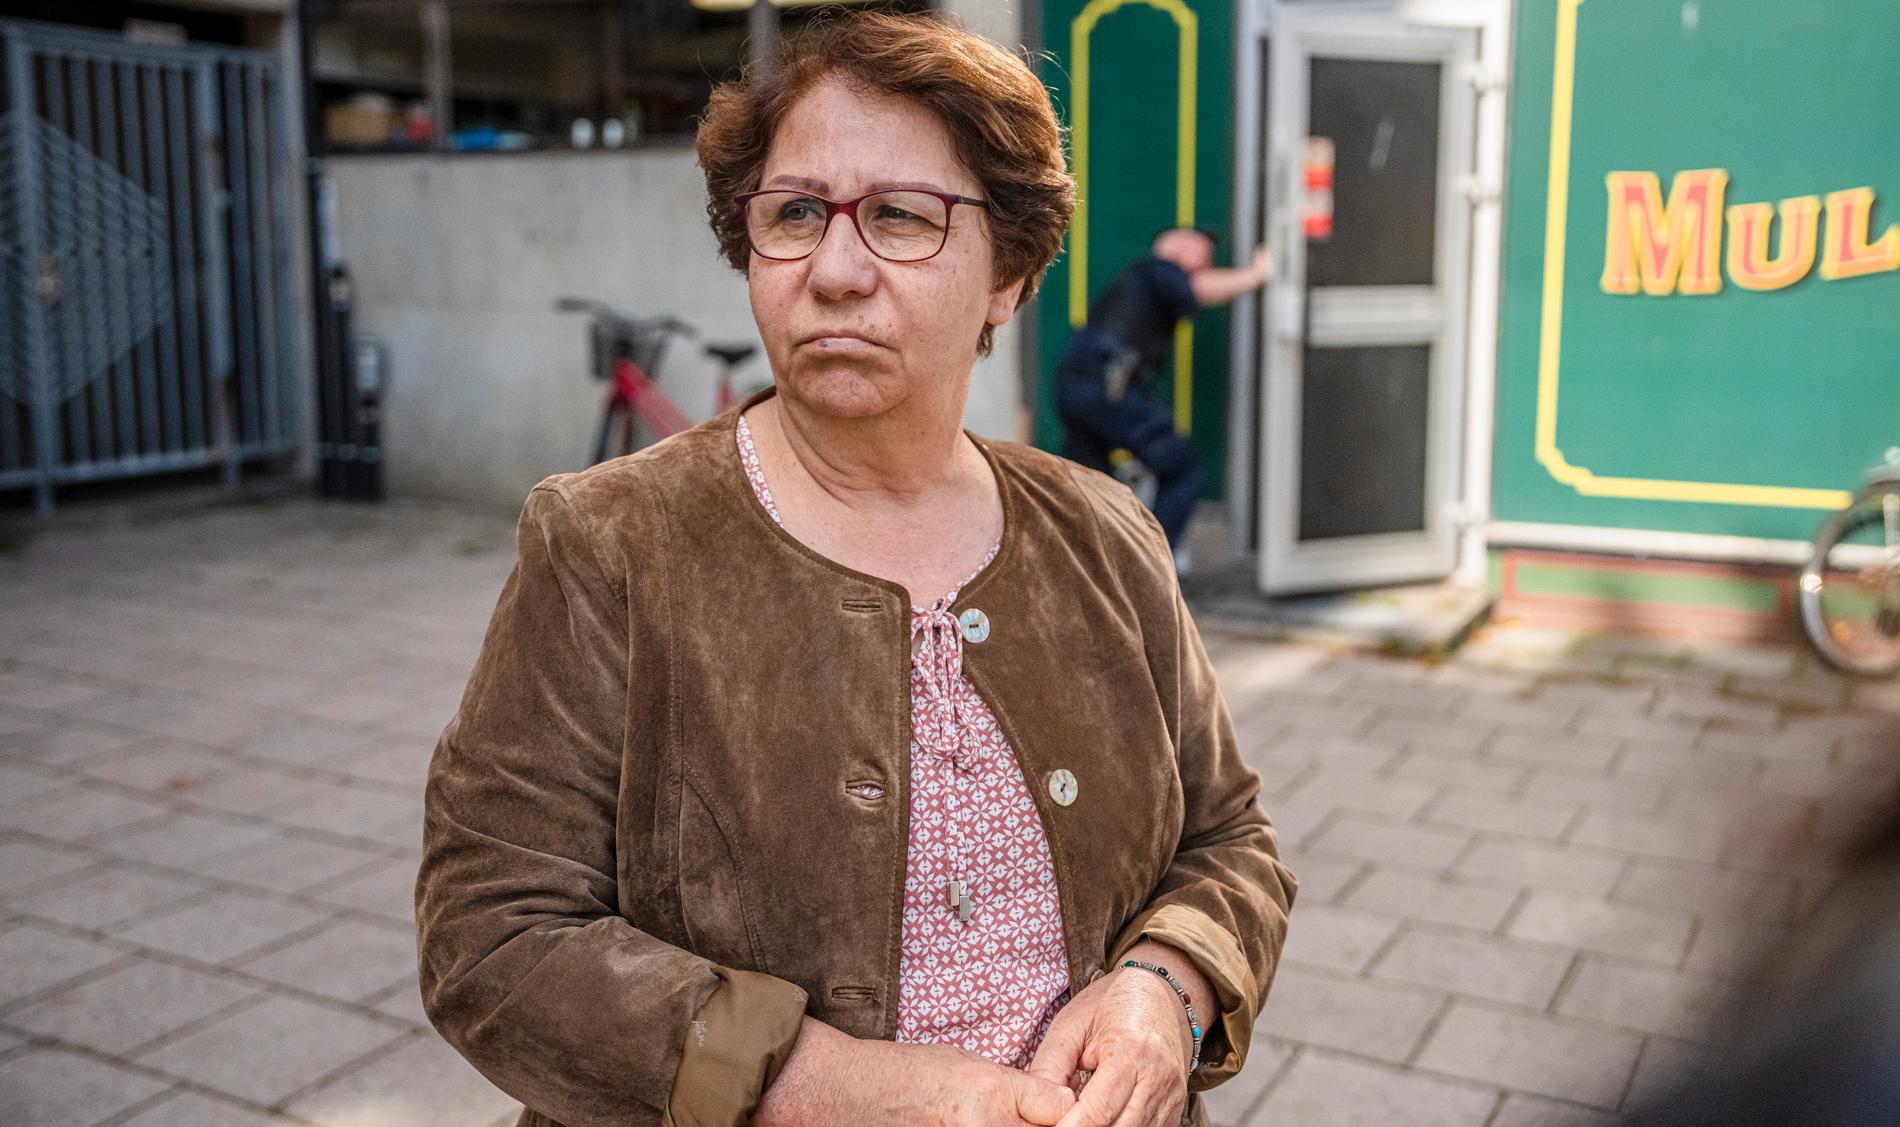 Hevi Hajo är rädd efter masskjutningen. ”Man tror inte sina ögon, ska det hända här i lilla Sandviken”, säger hon.